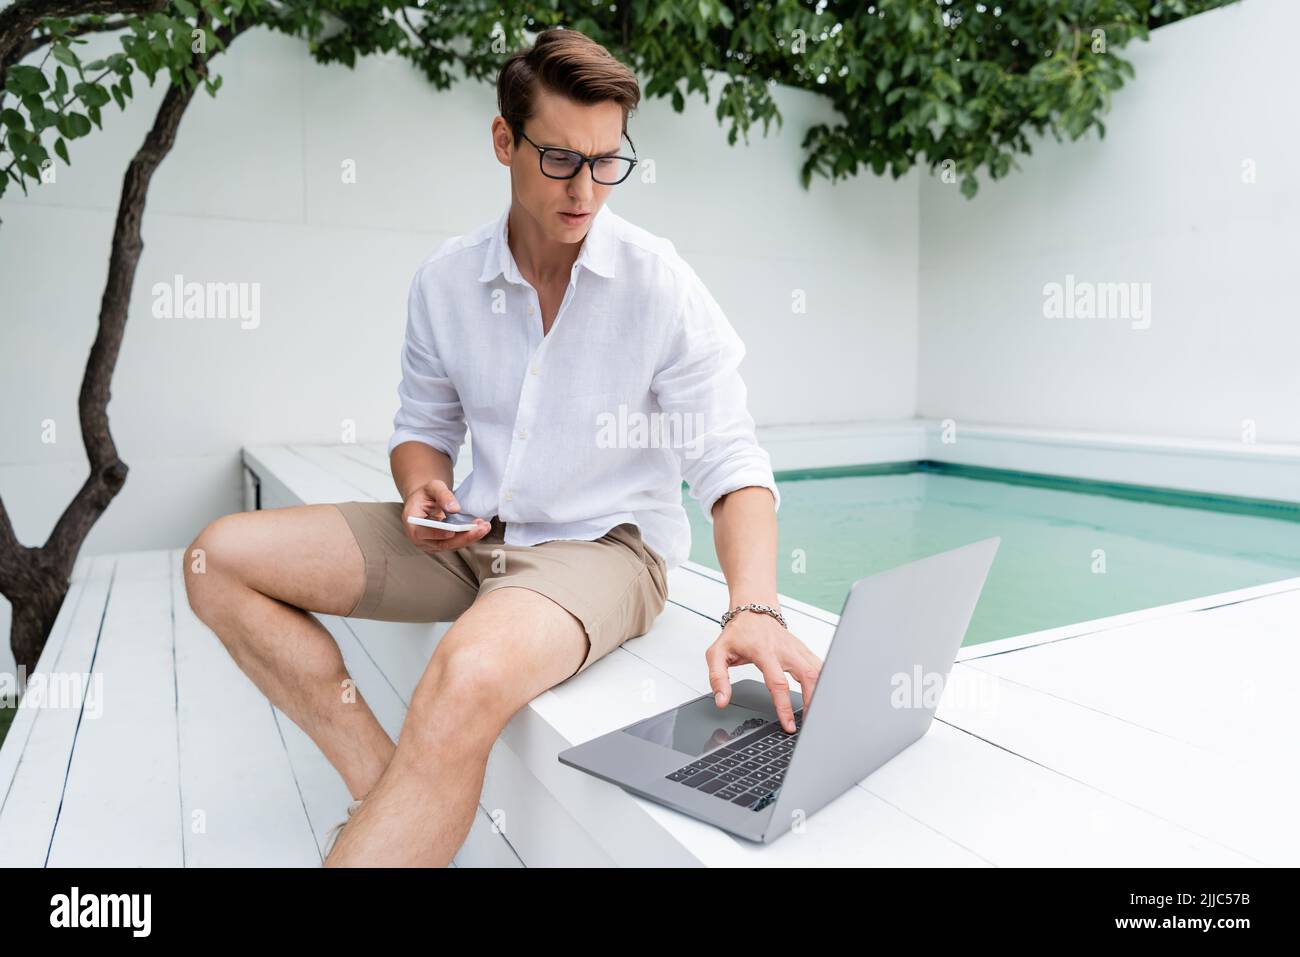 Nachdenklicher Mann in kurzen Hosen, der neben dem Pool mit Mobiltelefon sitzt und einen Laptop benutzt Stockfoto